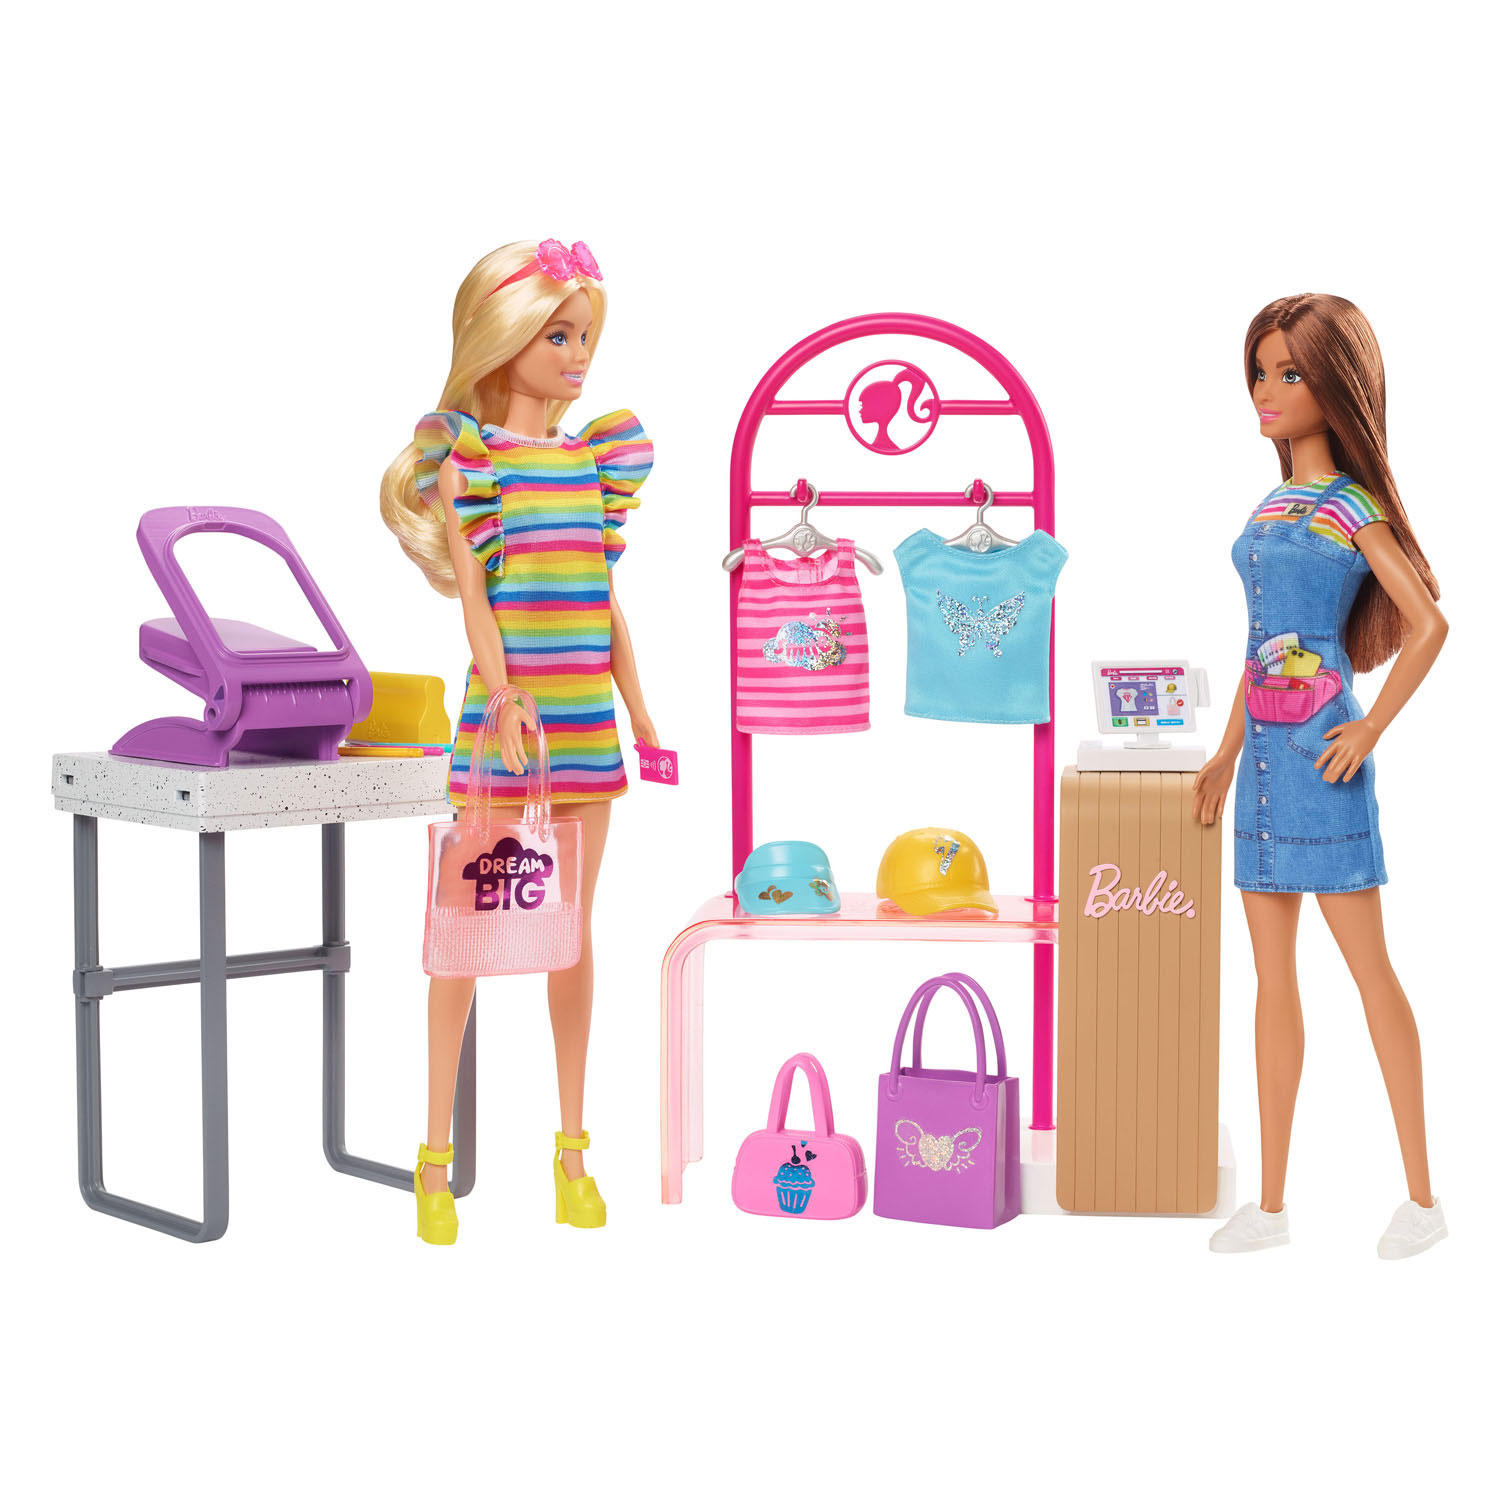 Barbie -Puppe mit Boutique-Shop